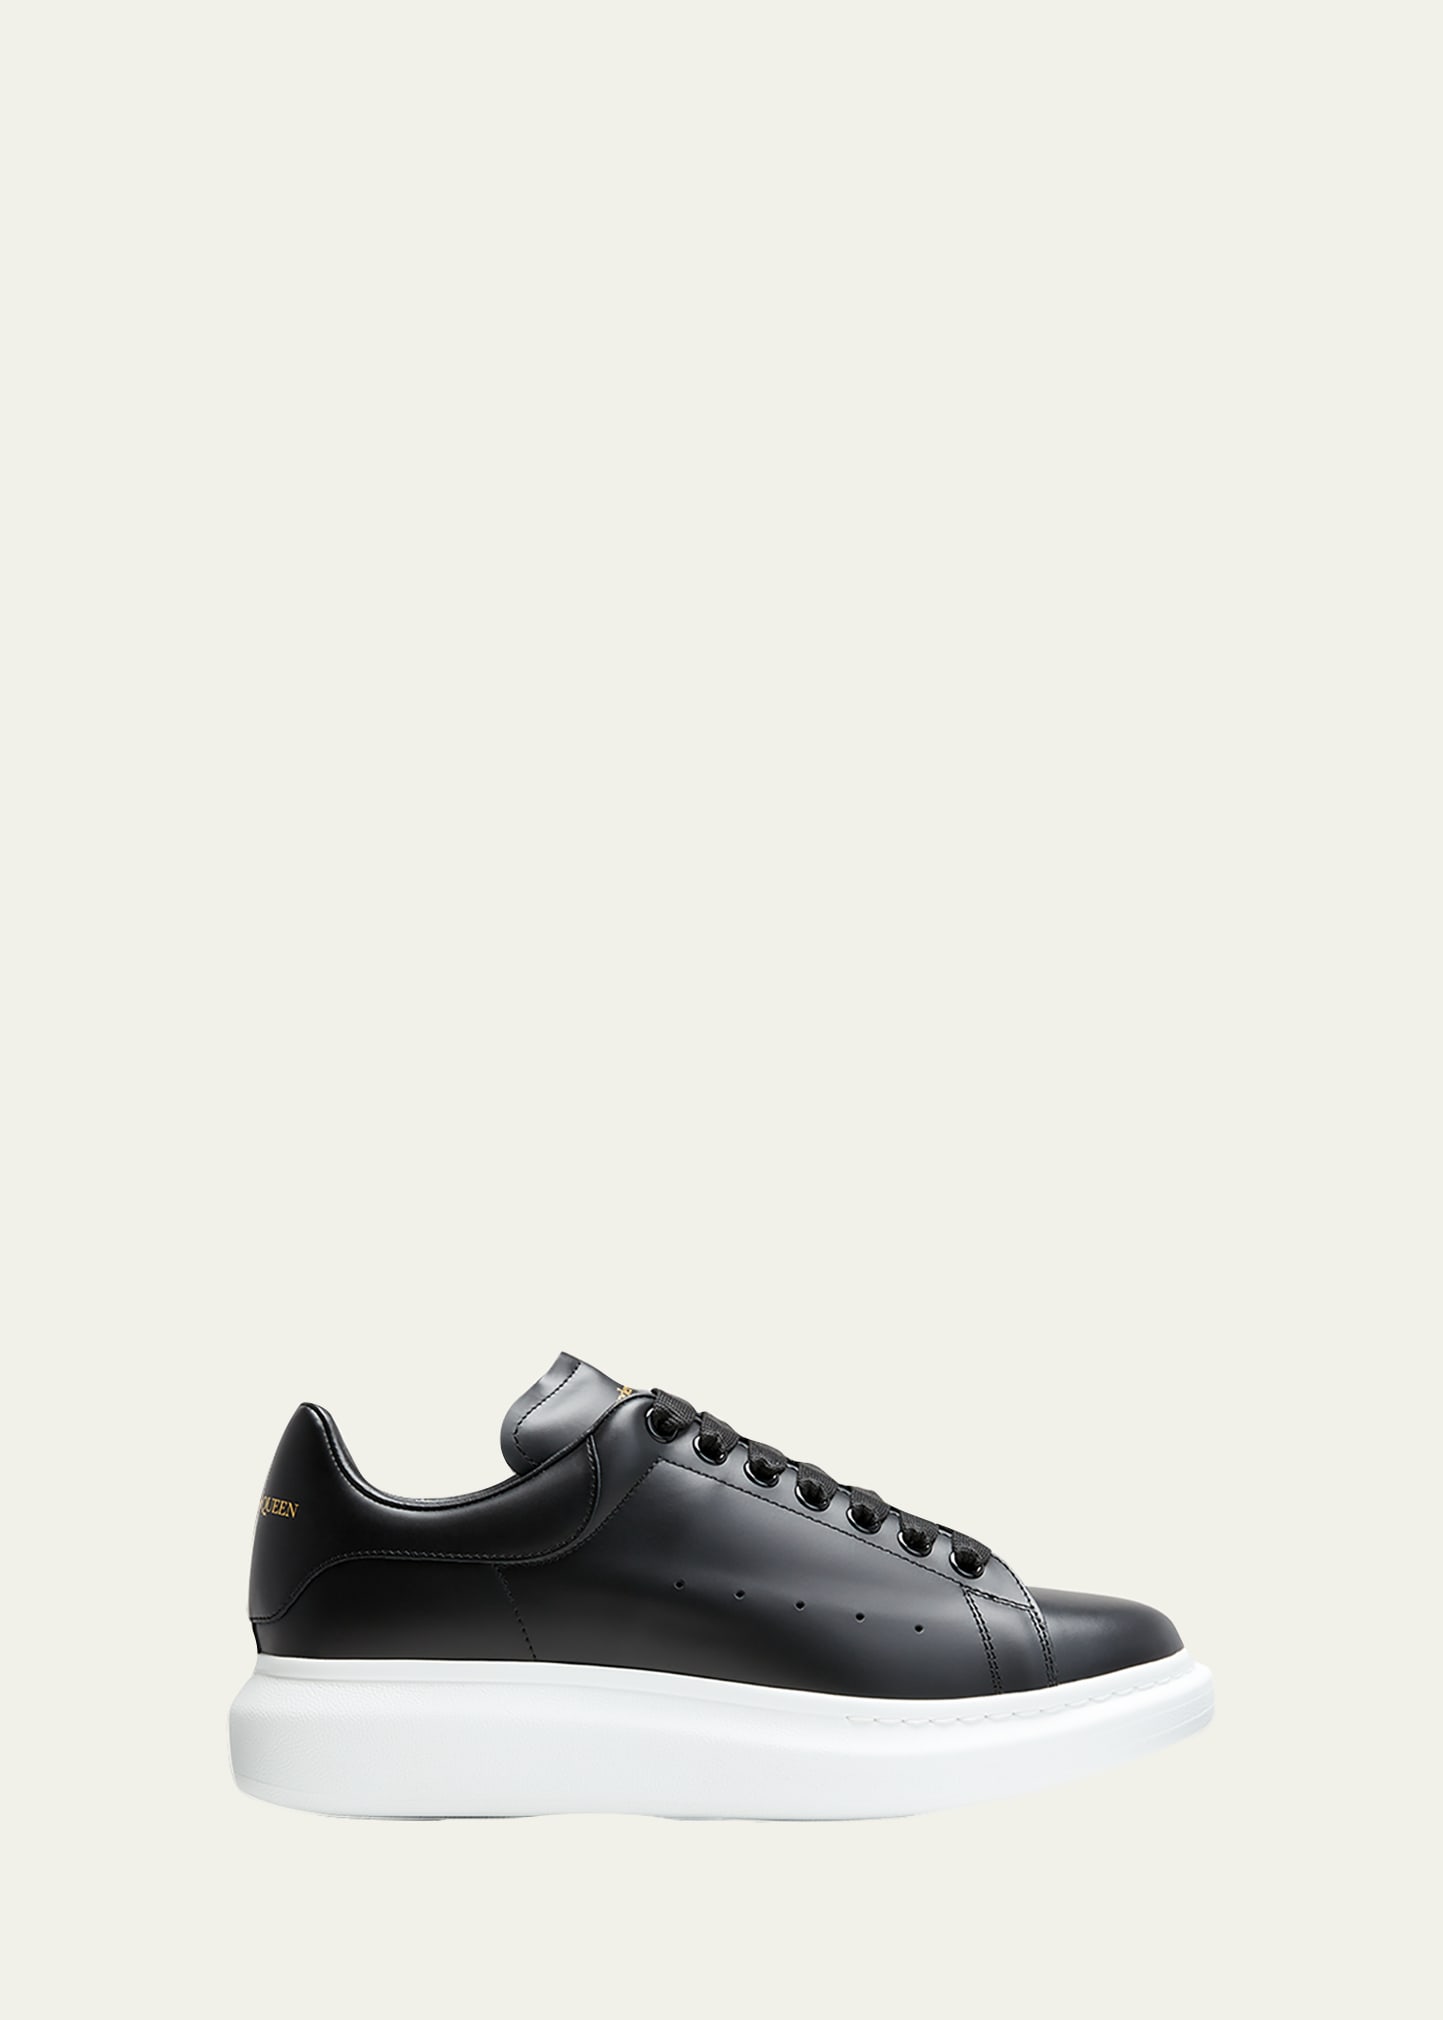 Alexander McQueen Men's Bicolor Leather Low-Top Sneakers